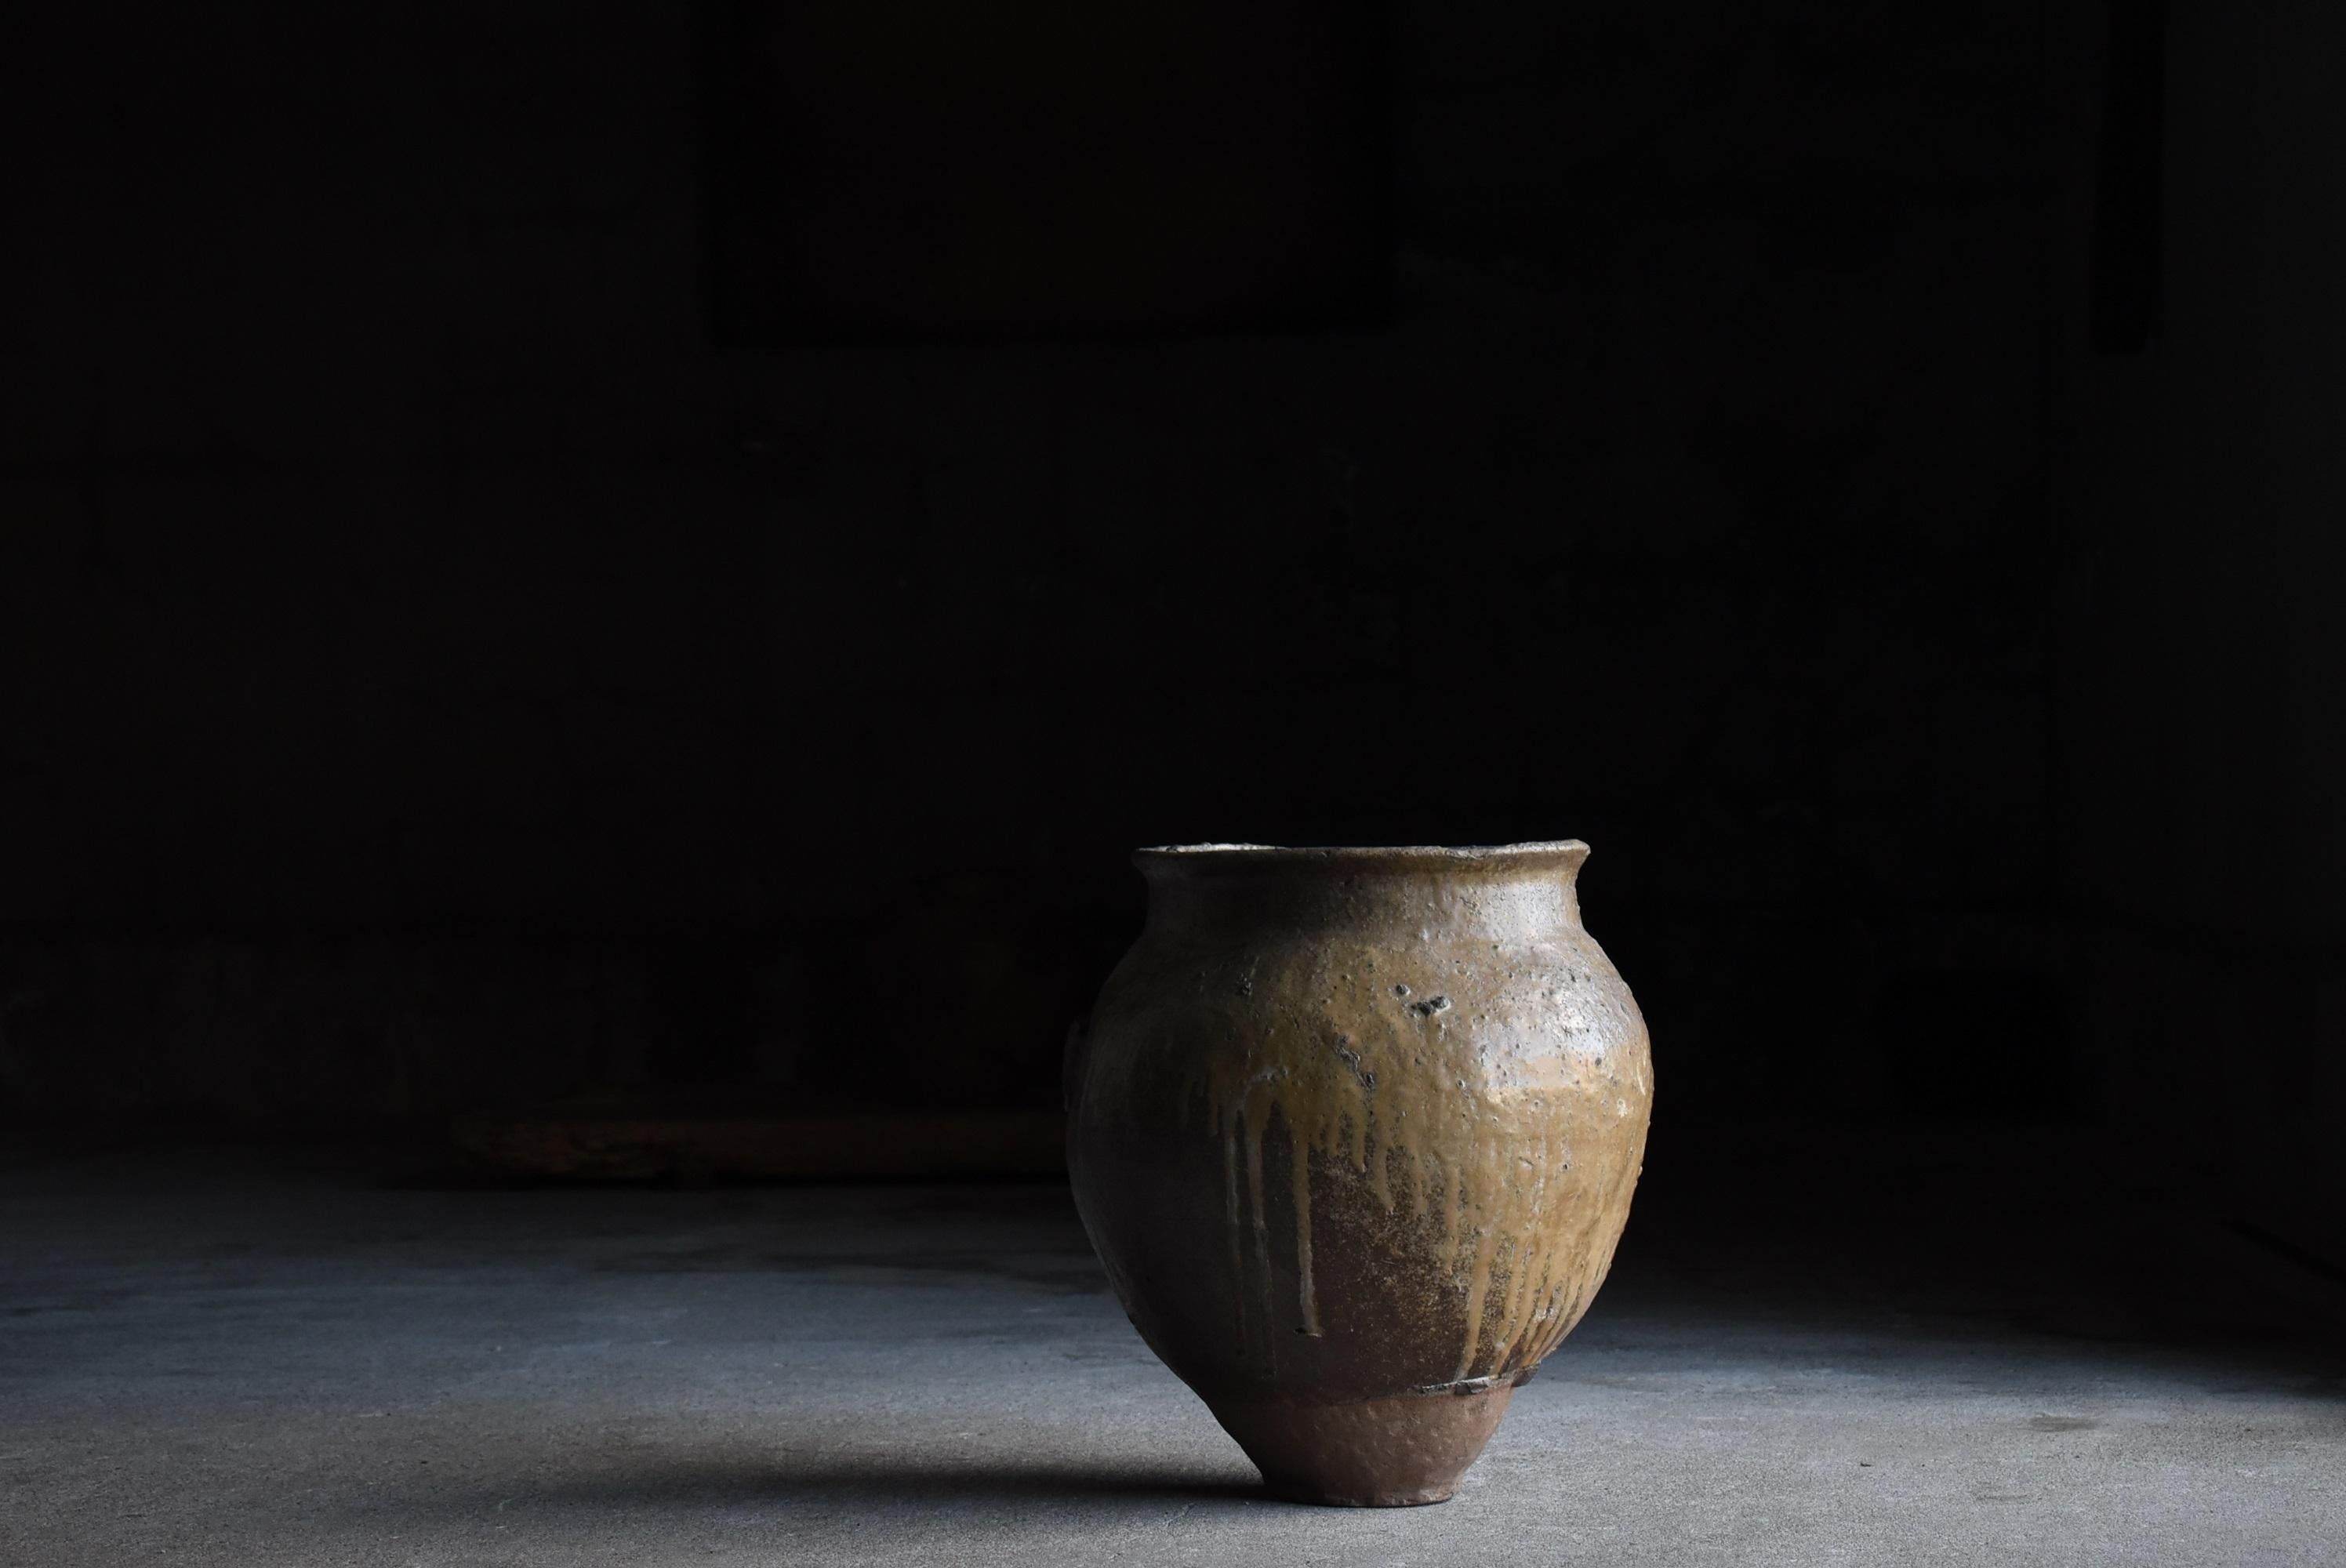 Japanese Antique Pottery 1700s-1800s/Flower Vase Vessel Jar Tsubo Wabisabi 12